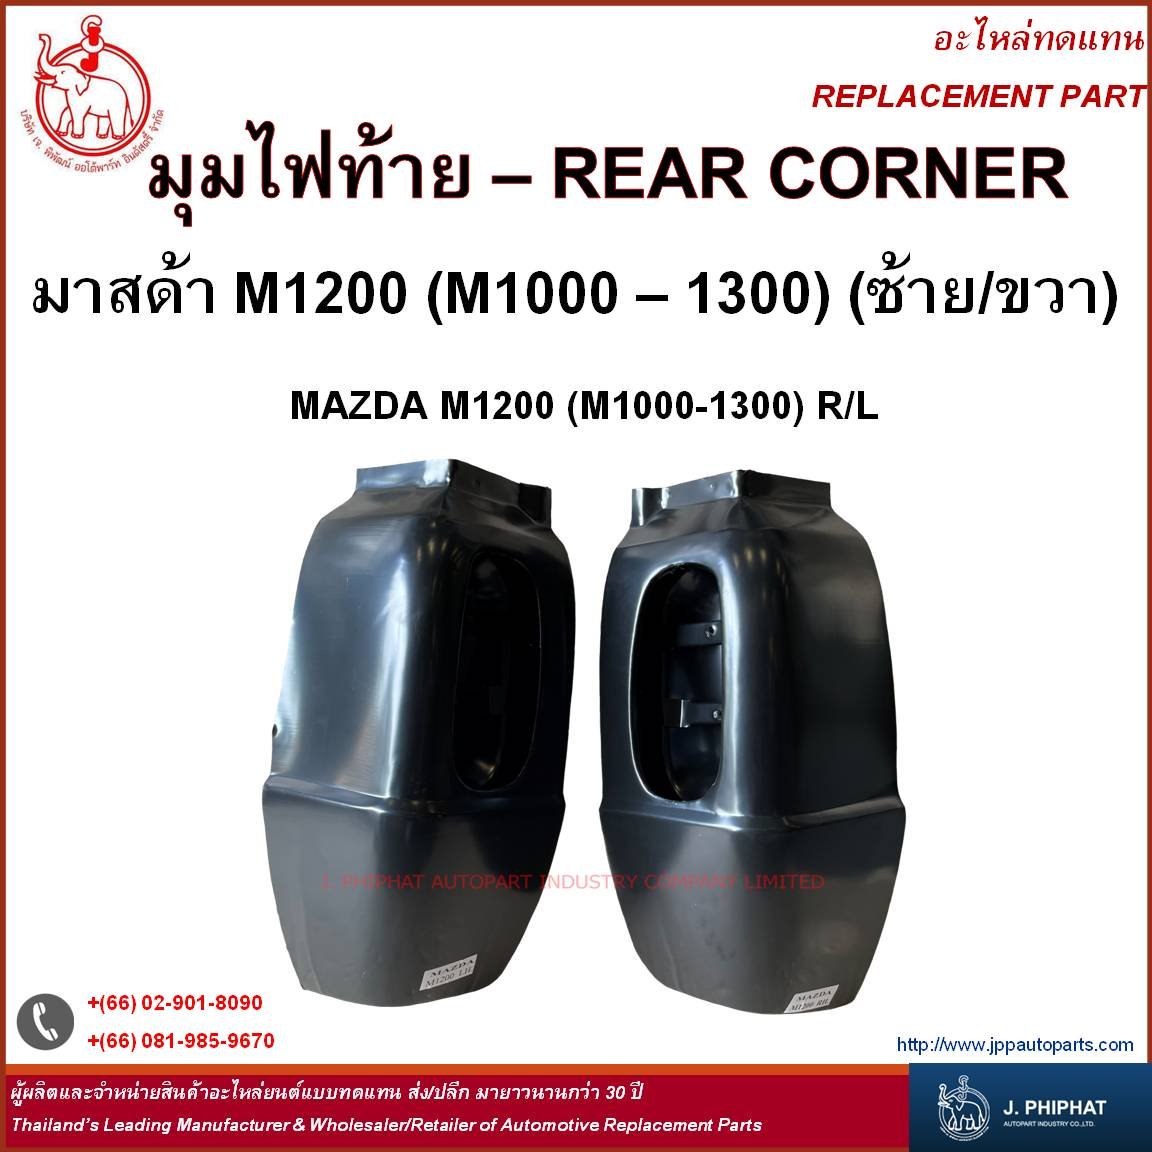 Rear Corner - Mazda M1200 (M1000-1300) (R/L)